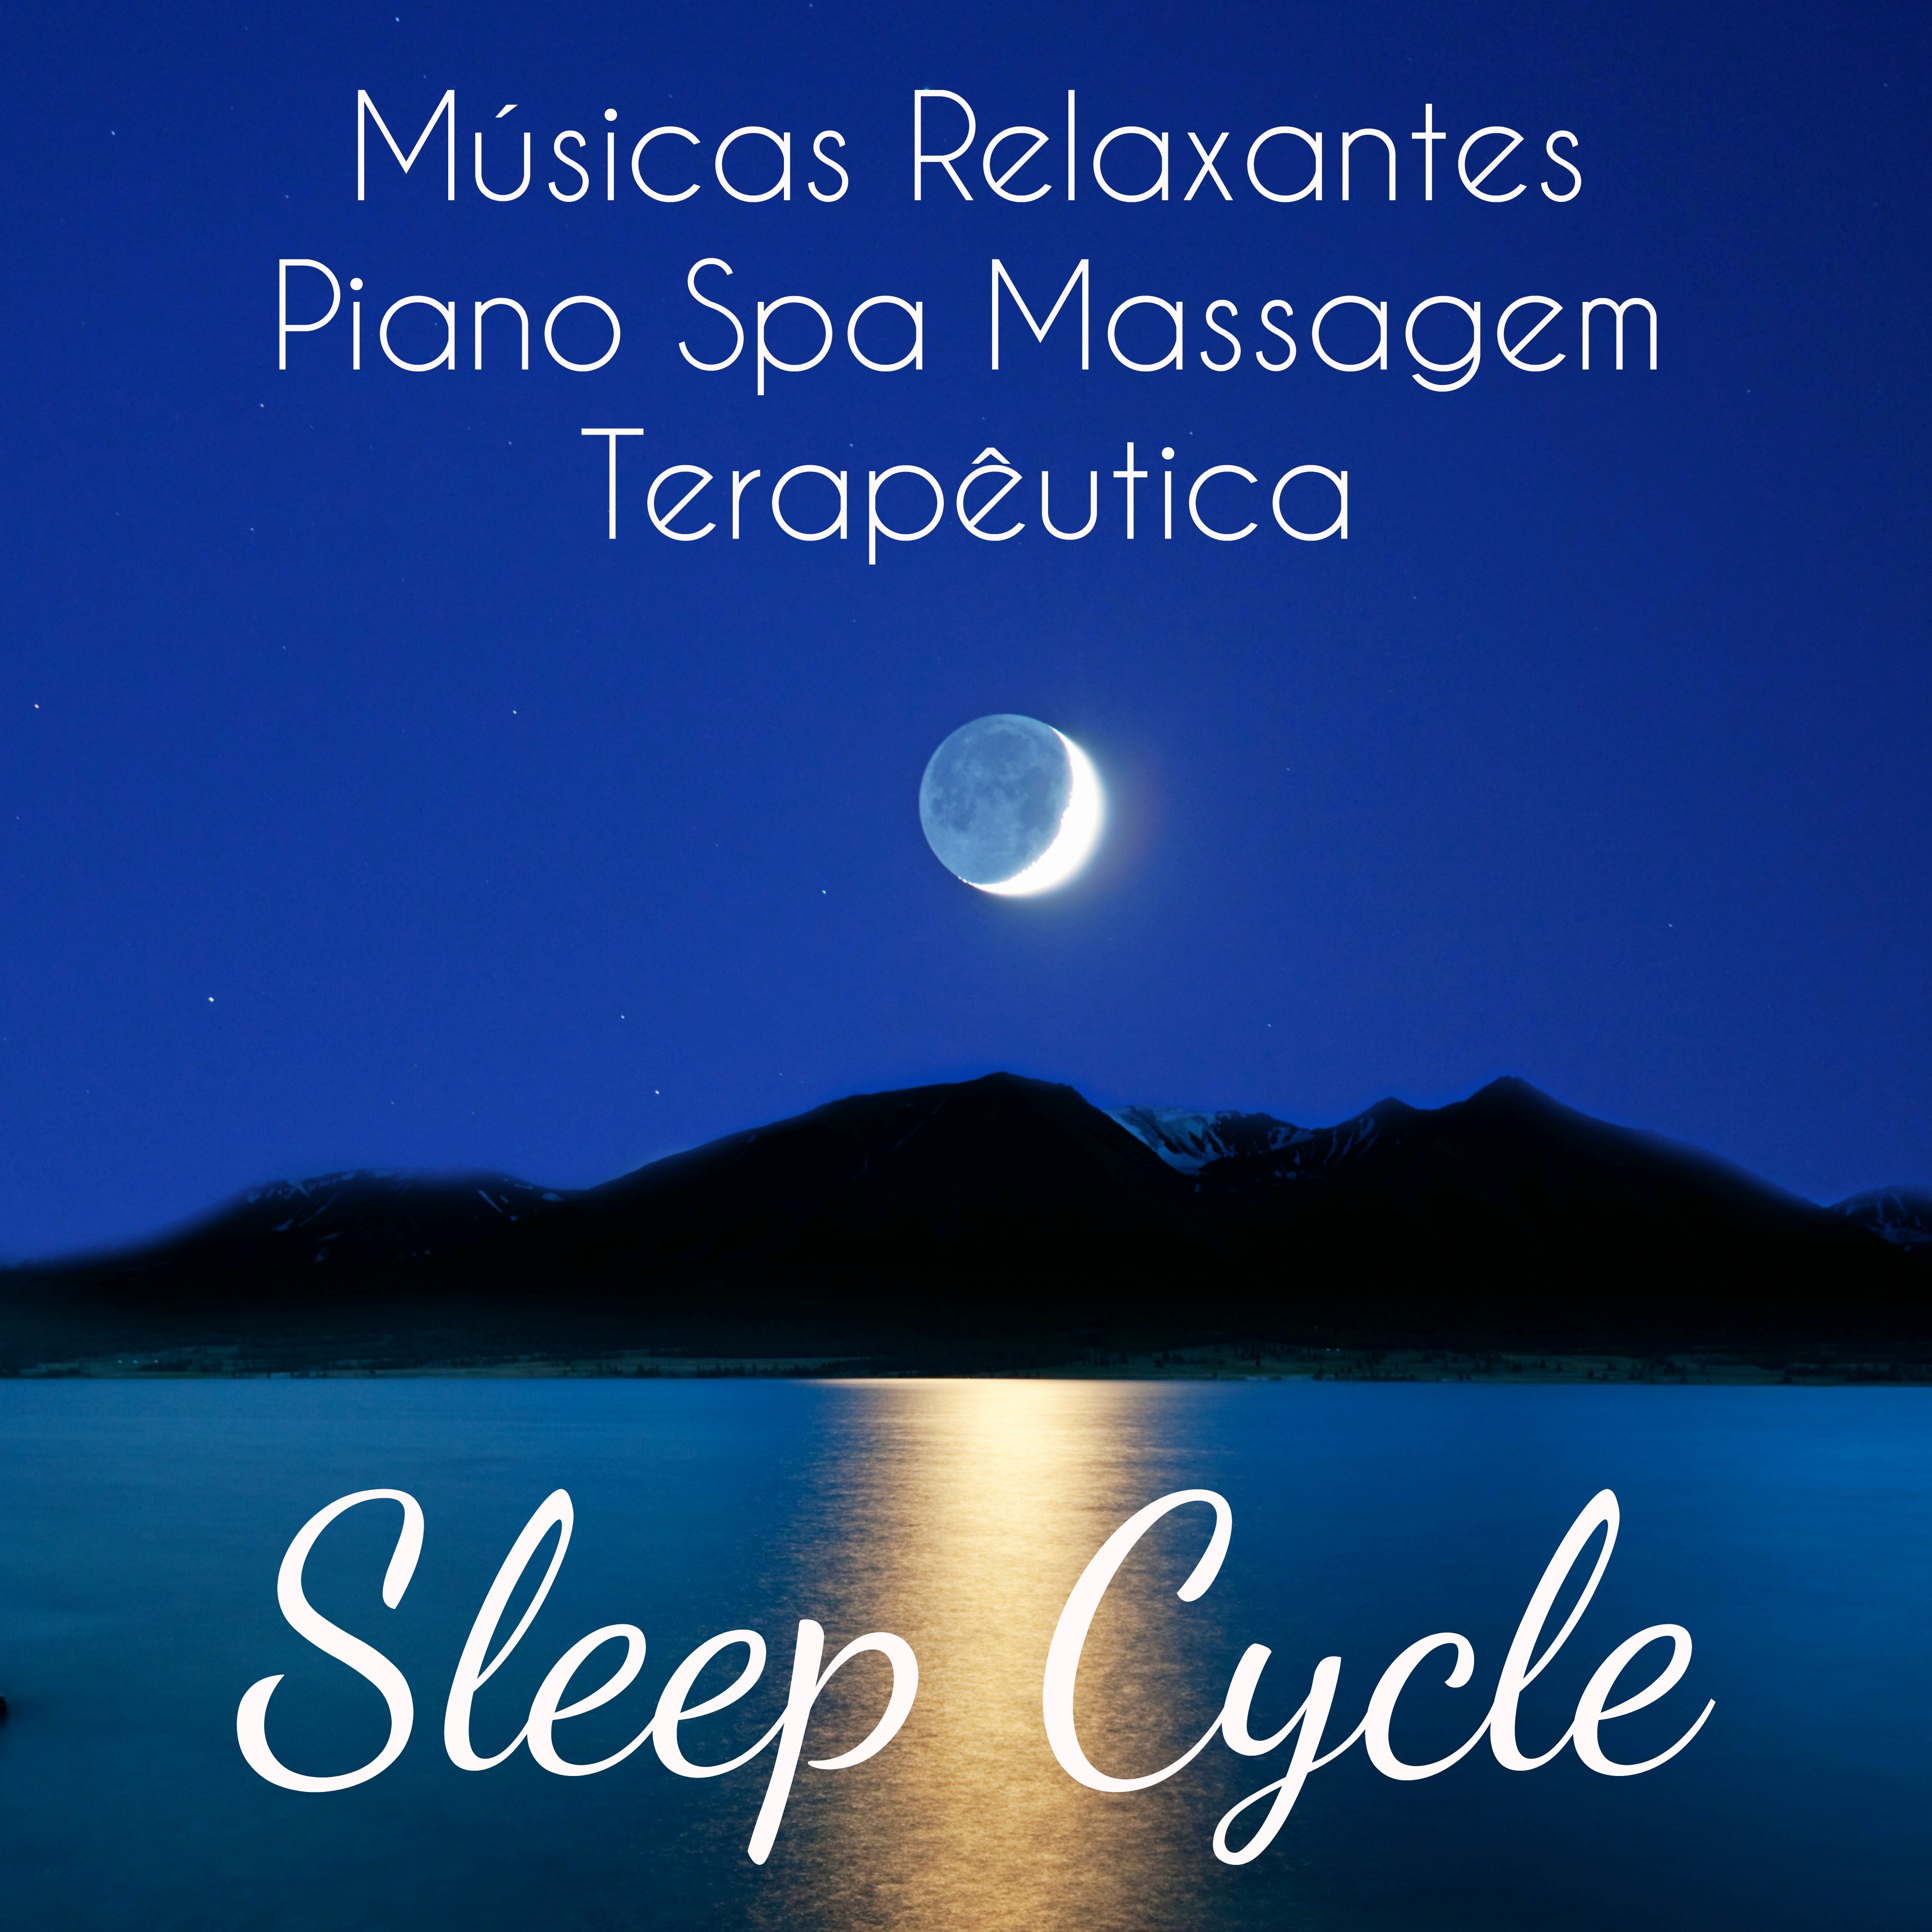 Sleep Cycle - Músicas Relaxantes Piano Spa Massagem Terapêutica para Relaxamento Profundo Meditação Diária e Dormir Bem